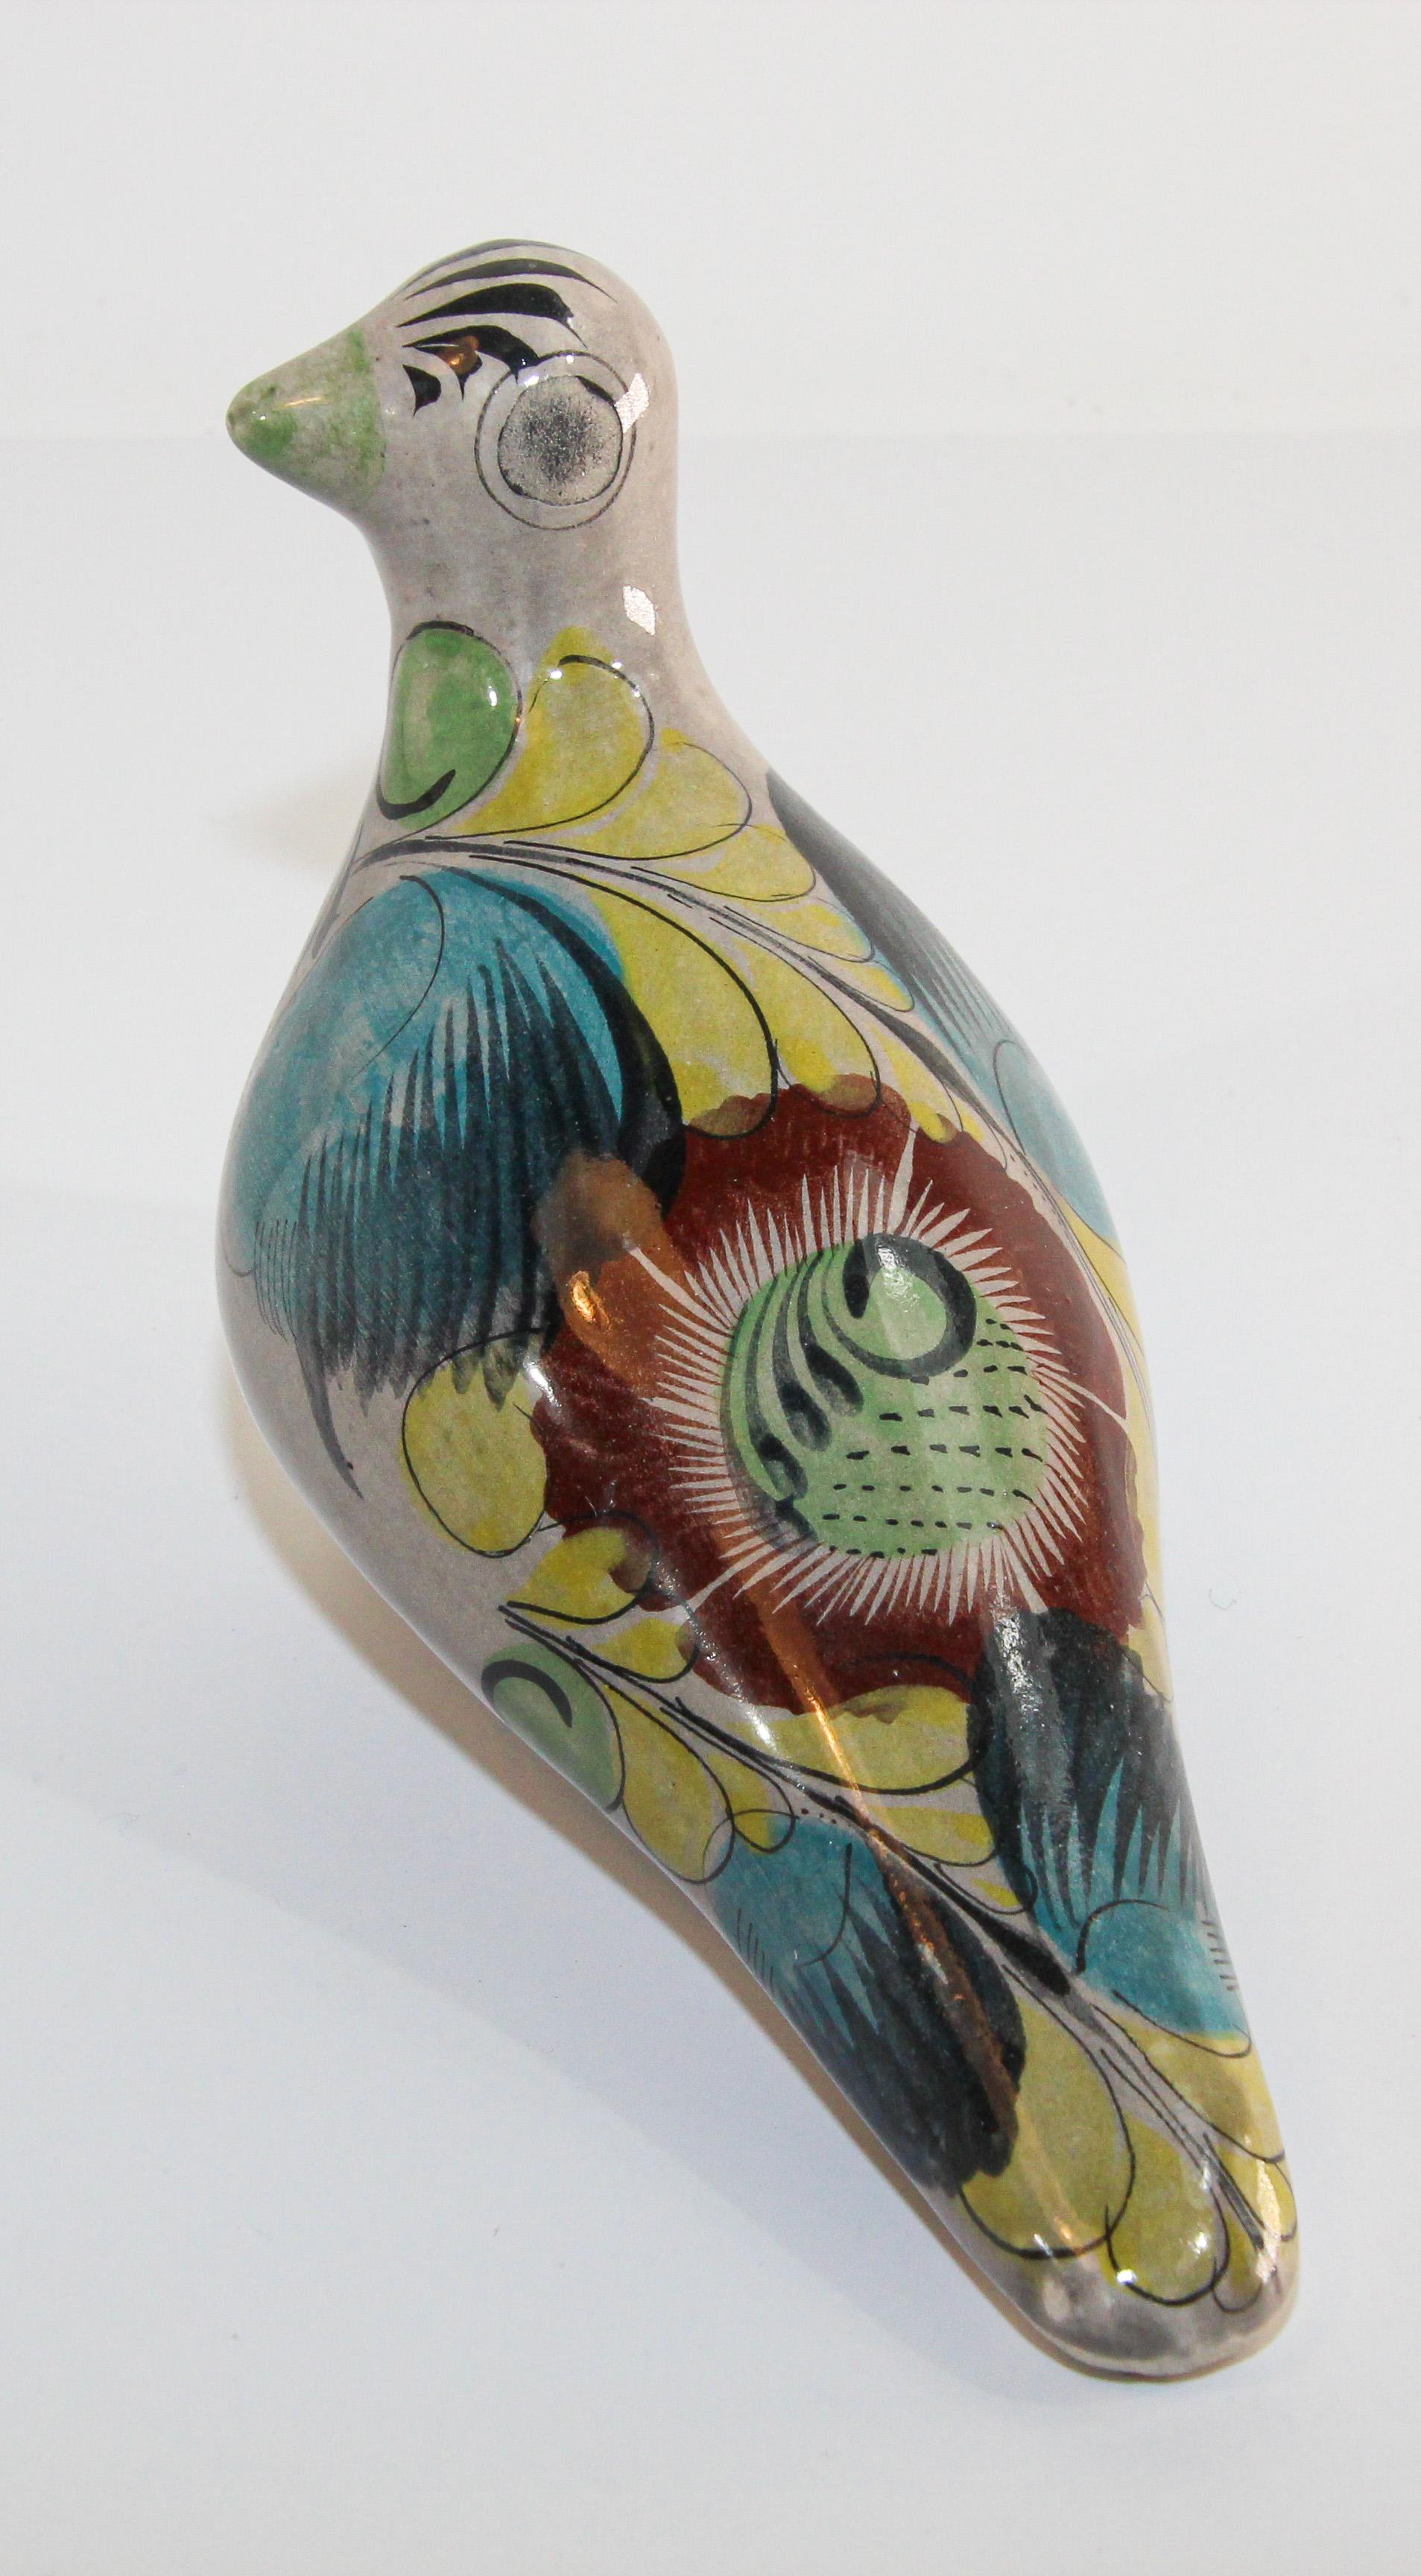 Vintage Mexican Tonala pottery hand painted bird Folk Art.
Flora de la Cruz Acapulco Gro Mexico oiseau peint à la main colombe en céramique.
Couleurs chaudes et polychromes avec un design abstrait peint à la main sur le corps.
Art populaire du